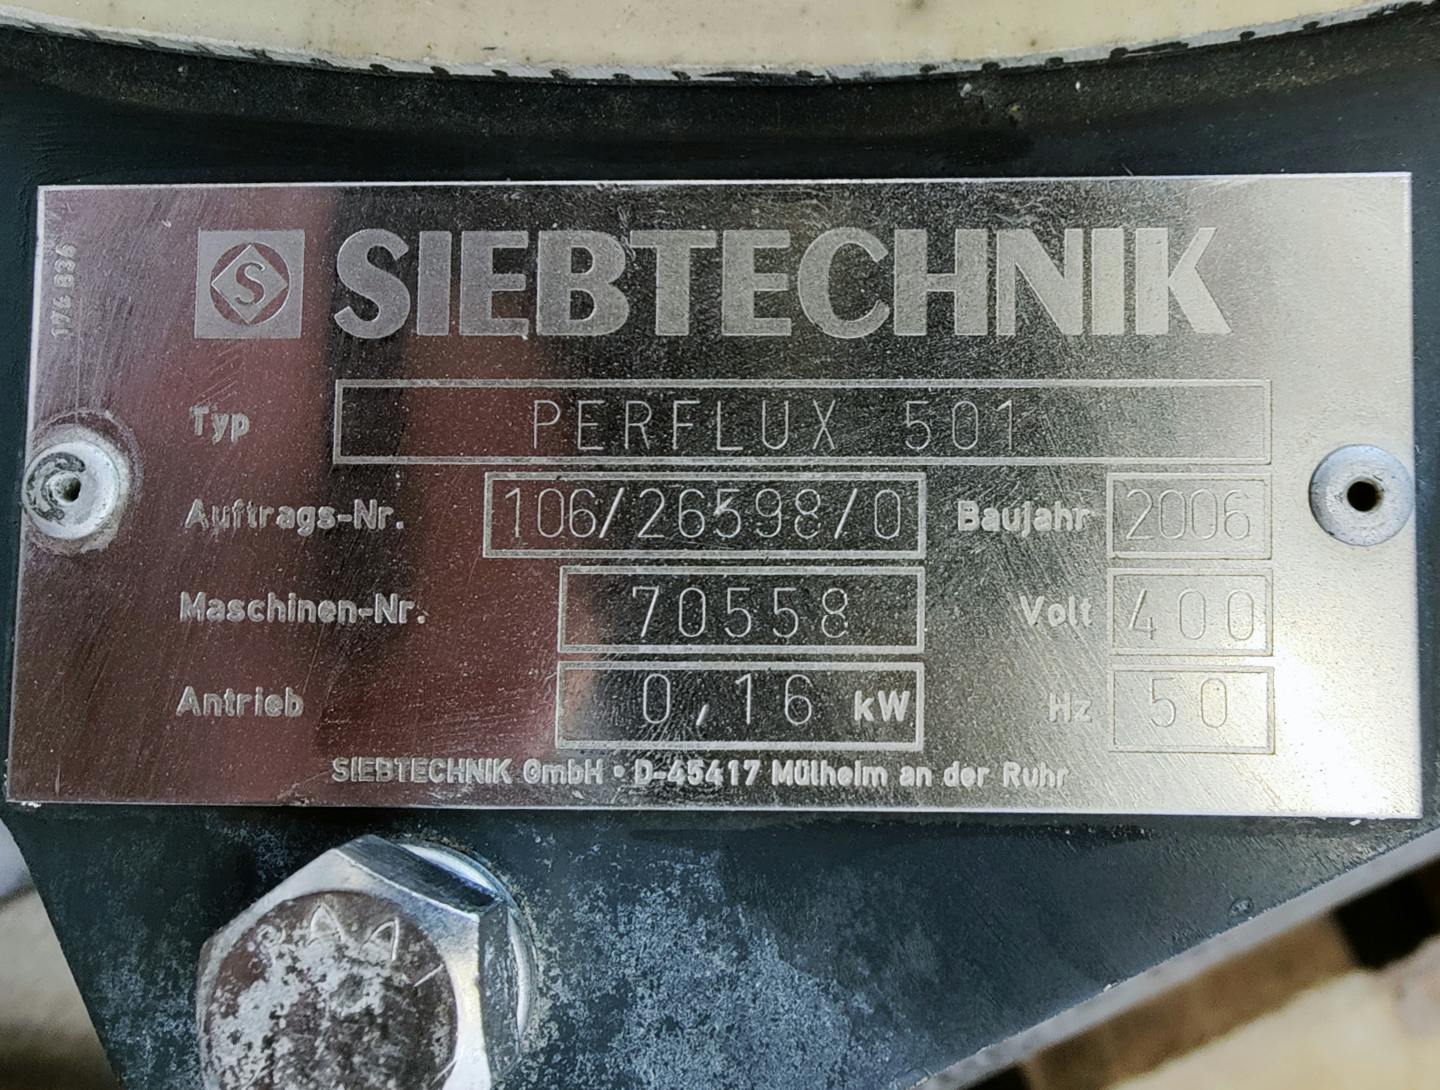 Siebtechnik perflux 501 - Vibro setaccio - image 7